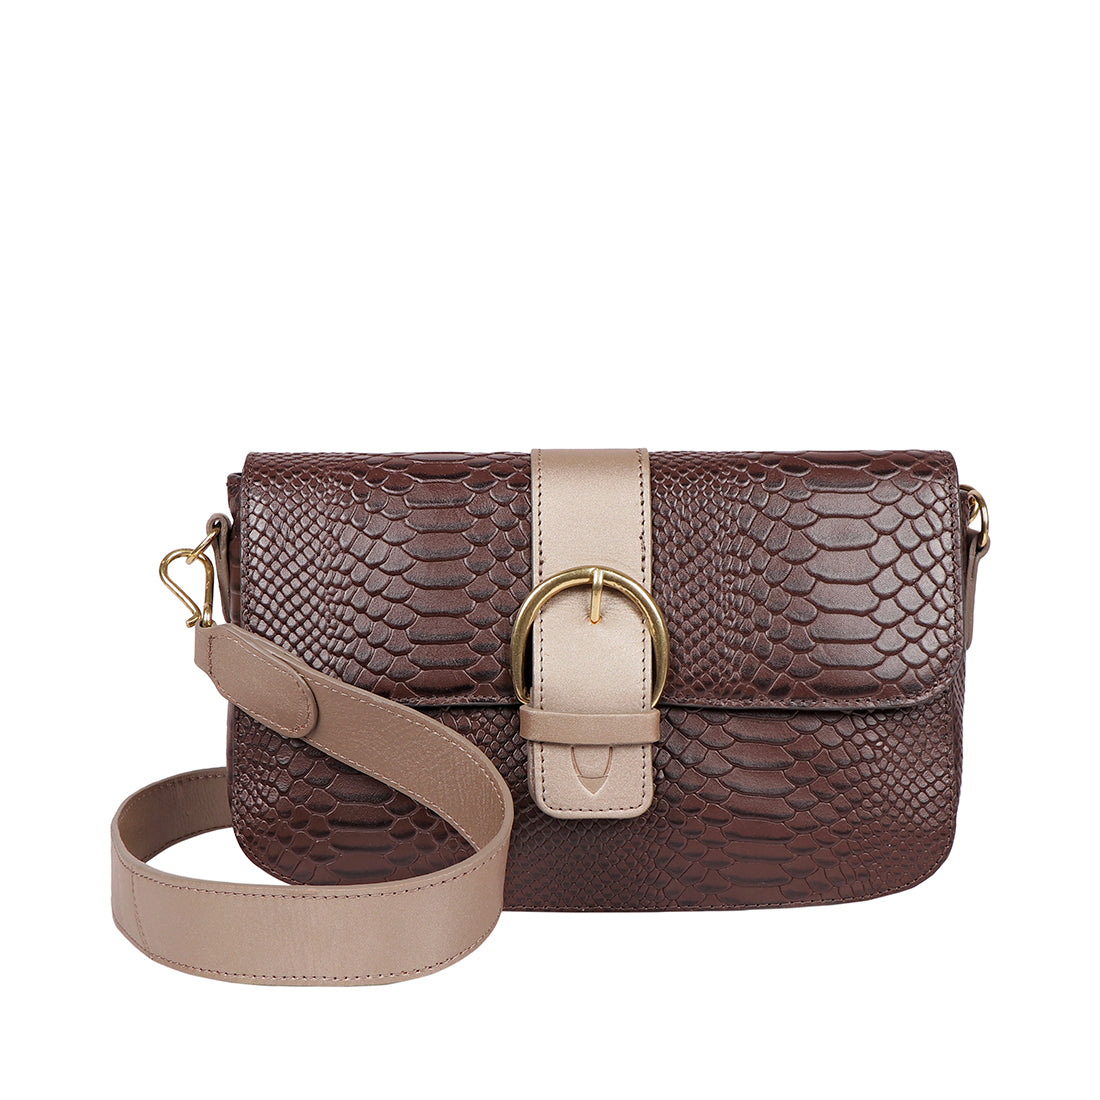 Buy Marsala Aspen 02 Sb Sling Bag Online - Hidesign